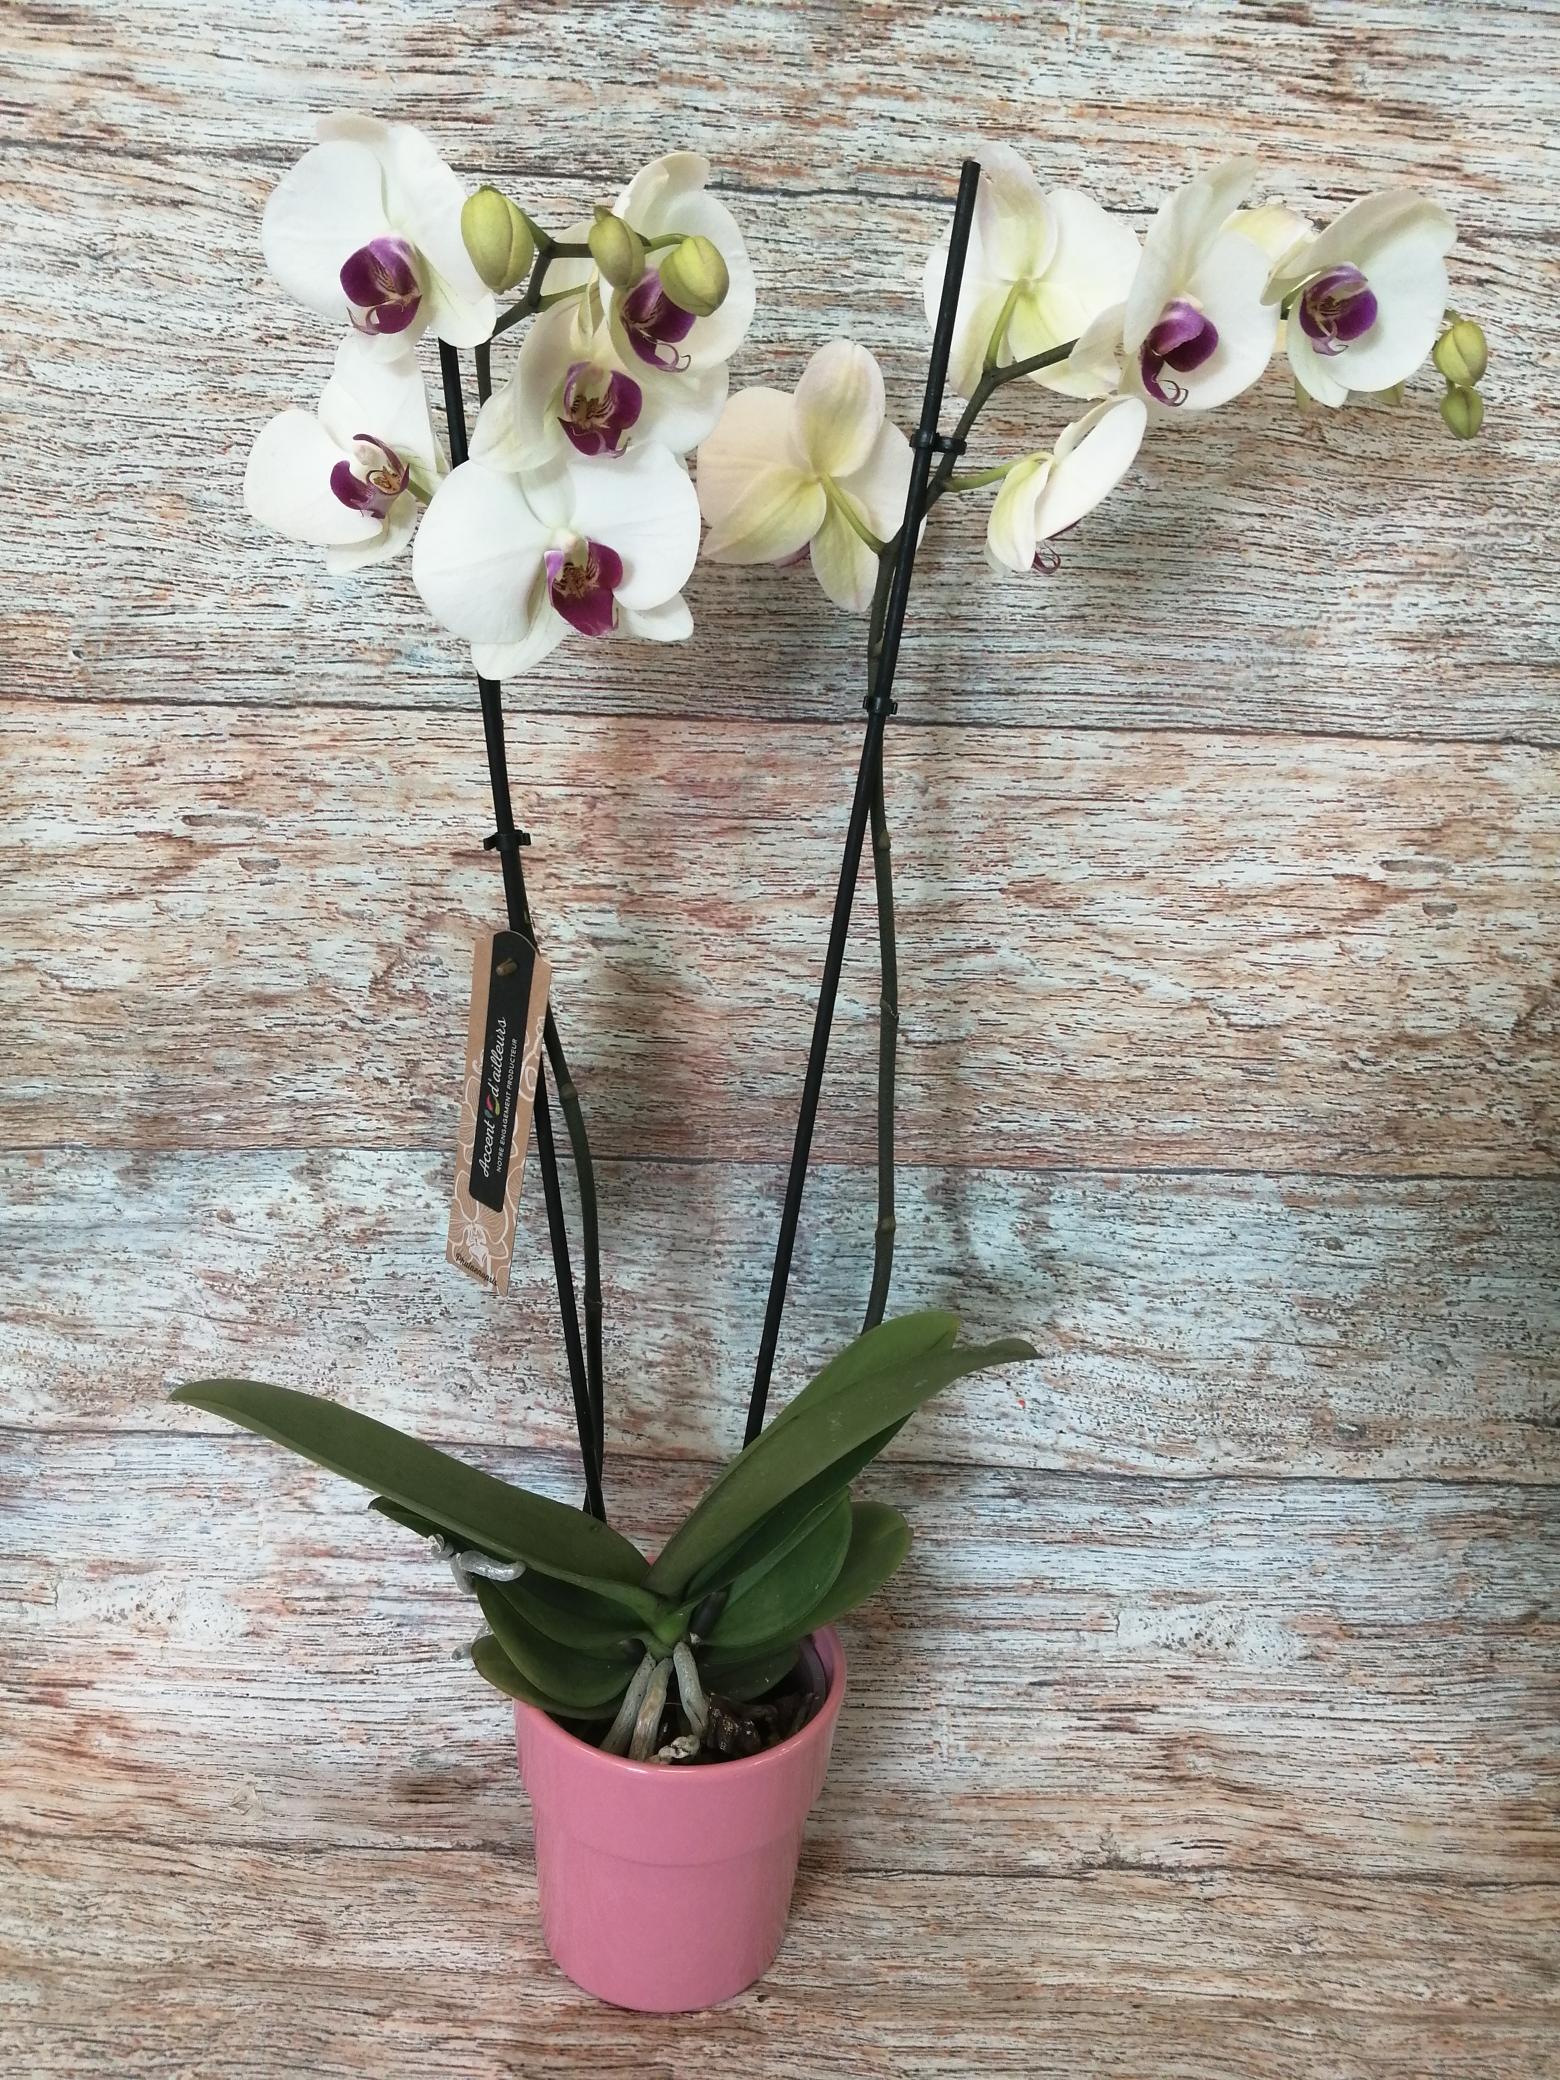 Orchidée Phalaenopsis 2 tiges - pot D.12 cm